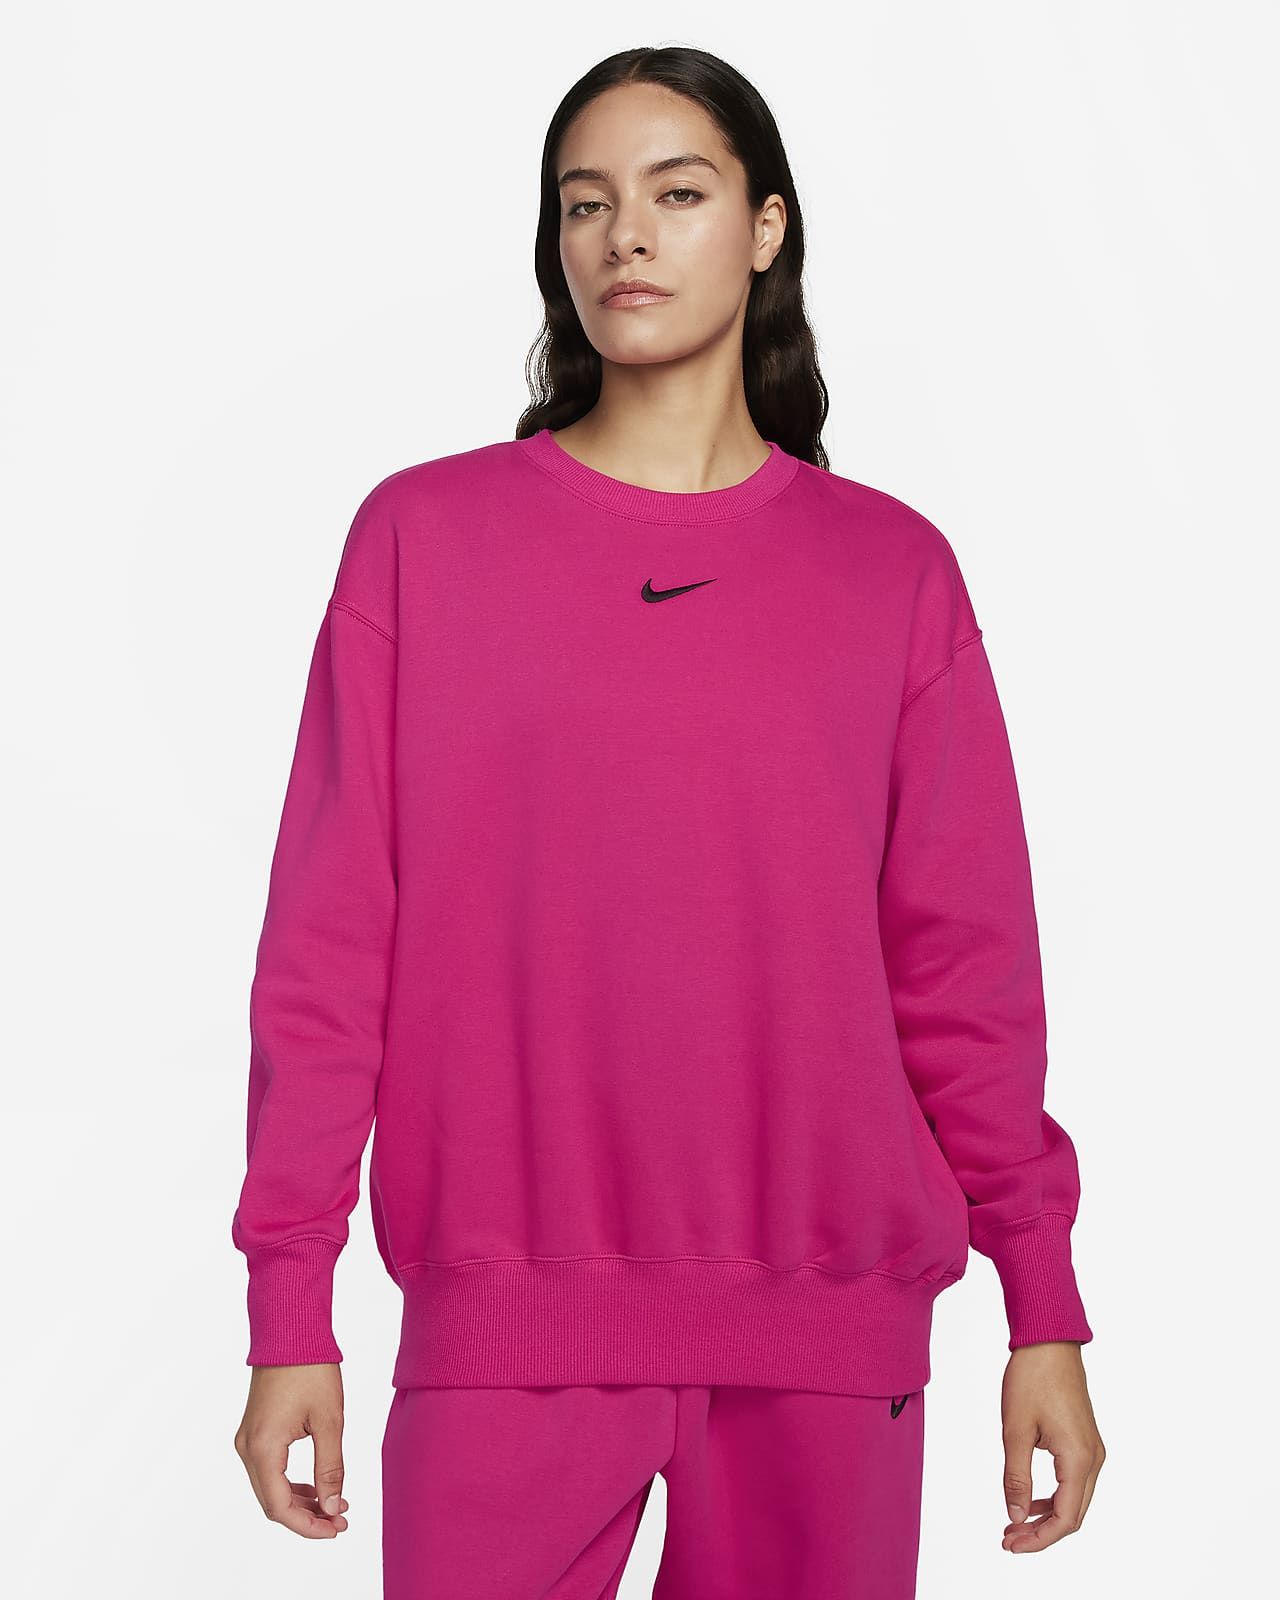 Nike Sportswear Phoenix Fleece Women's Oversized Crew-Neck Sweatshirt. Nike.com | Nike (US)